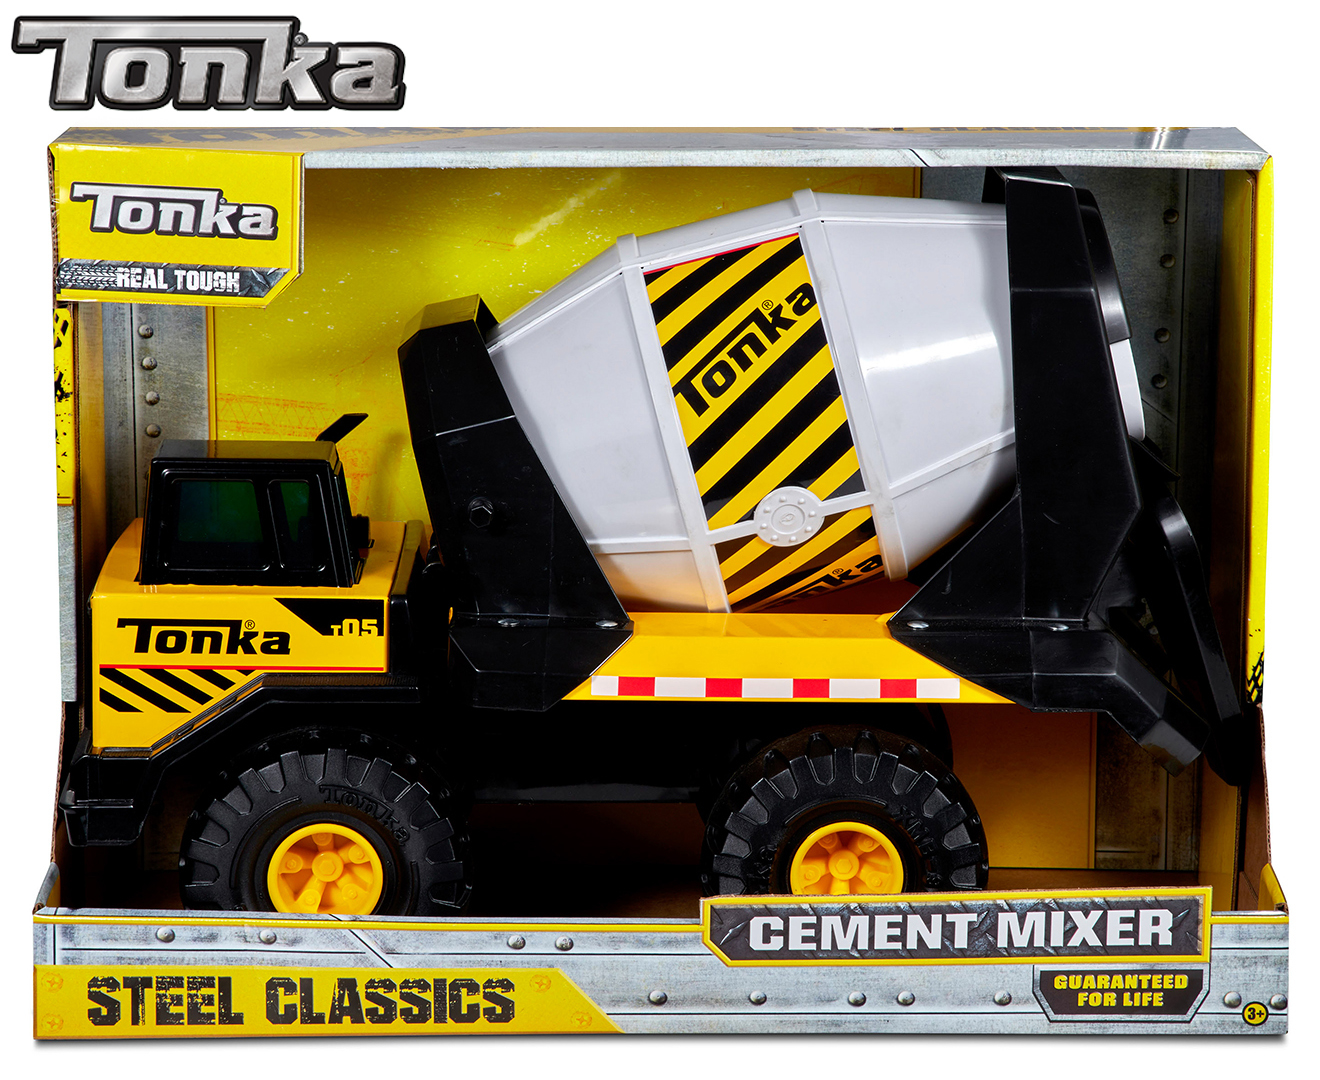 tonka cement mixer target